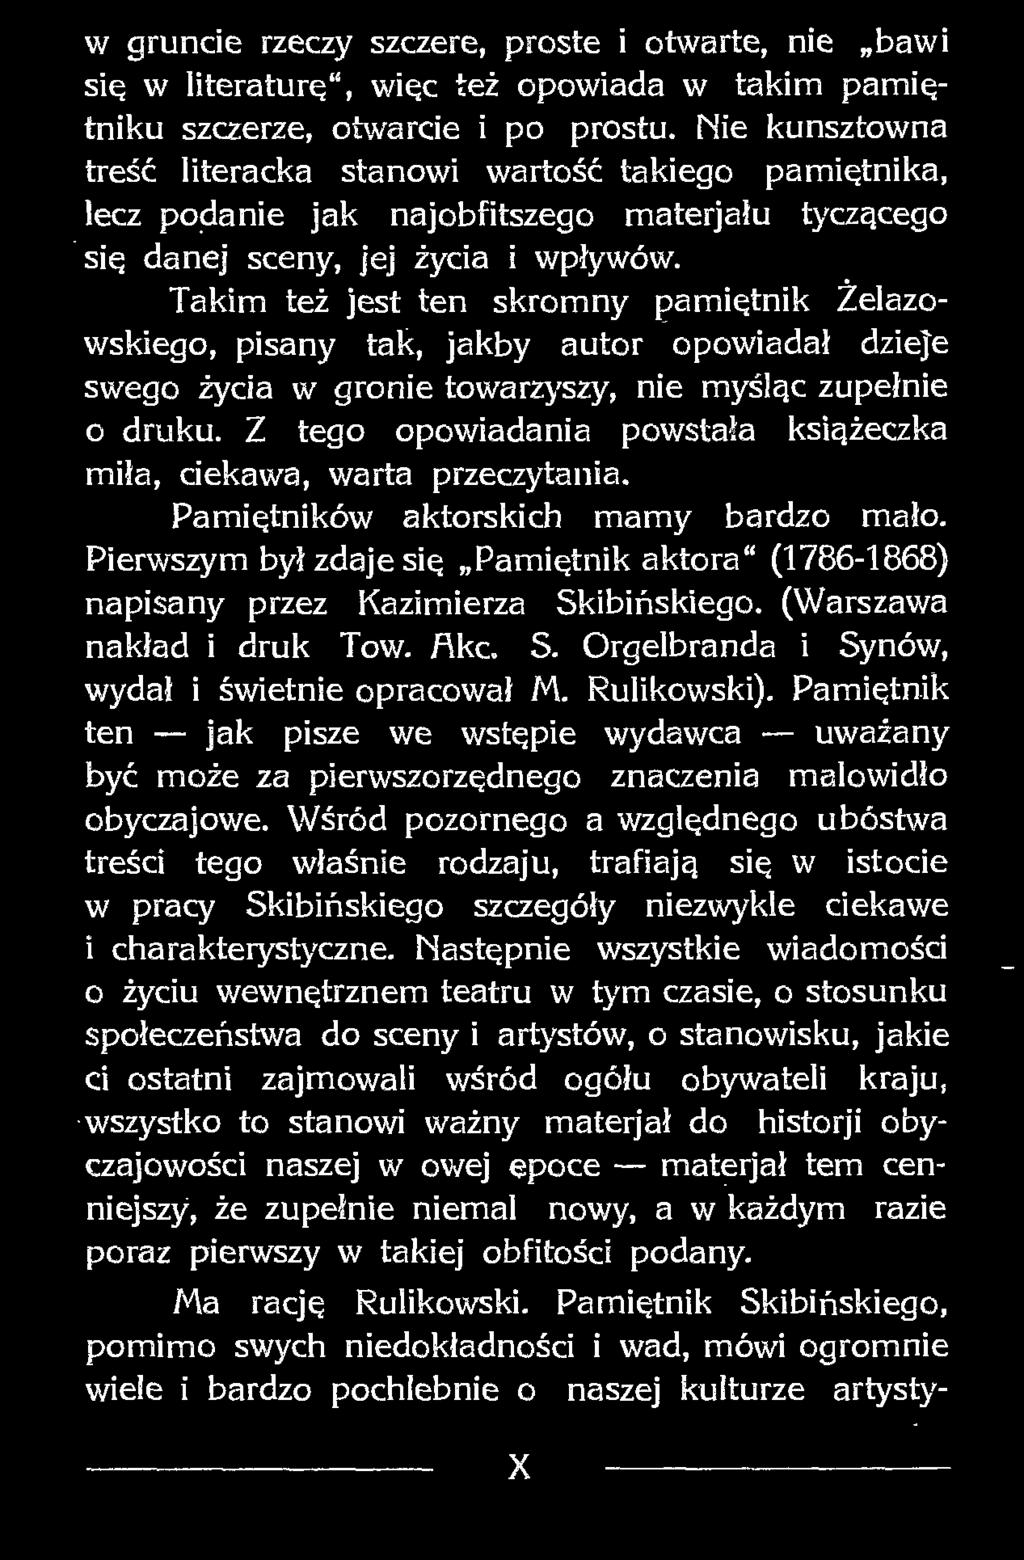 Takim też jest ten skromny pamiętnik Żelazowskiego, pisany tak, jakby autor opowiadał dzieje swego życia w gronie towarzyszy, nie myśląc zupełnie o druku.